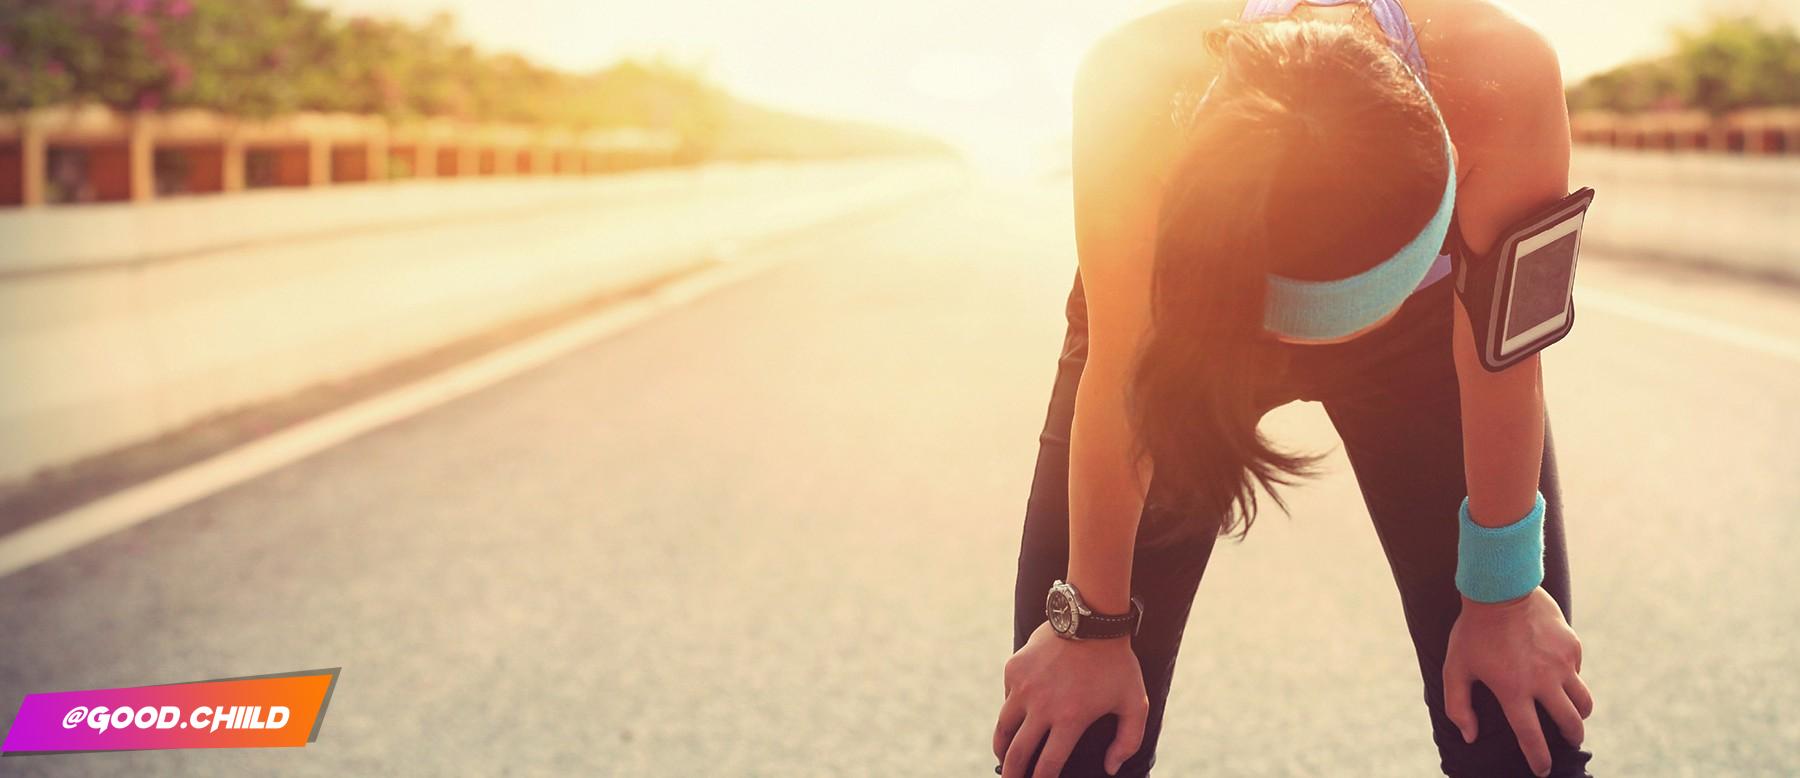 Crampes intestinales et course à pied : comment les éviter ? - trucs de runneuse